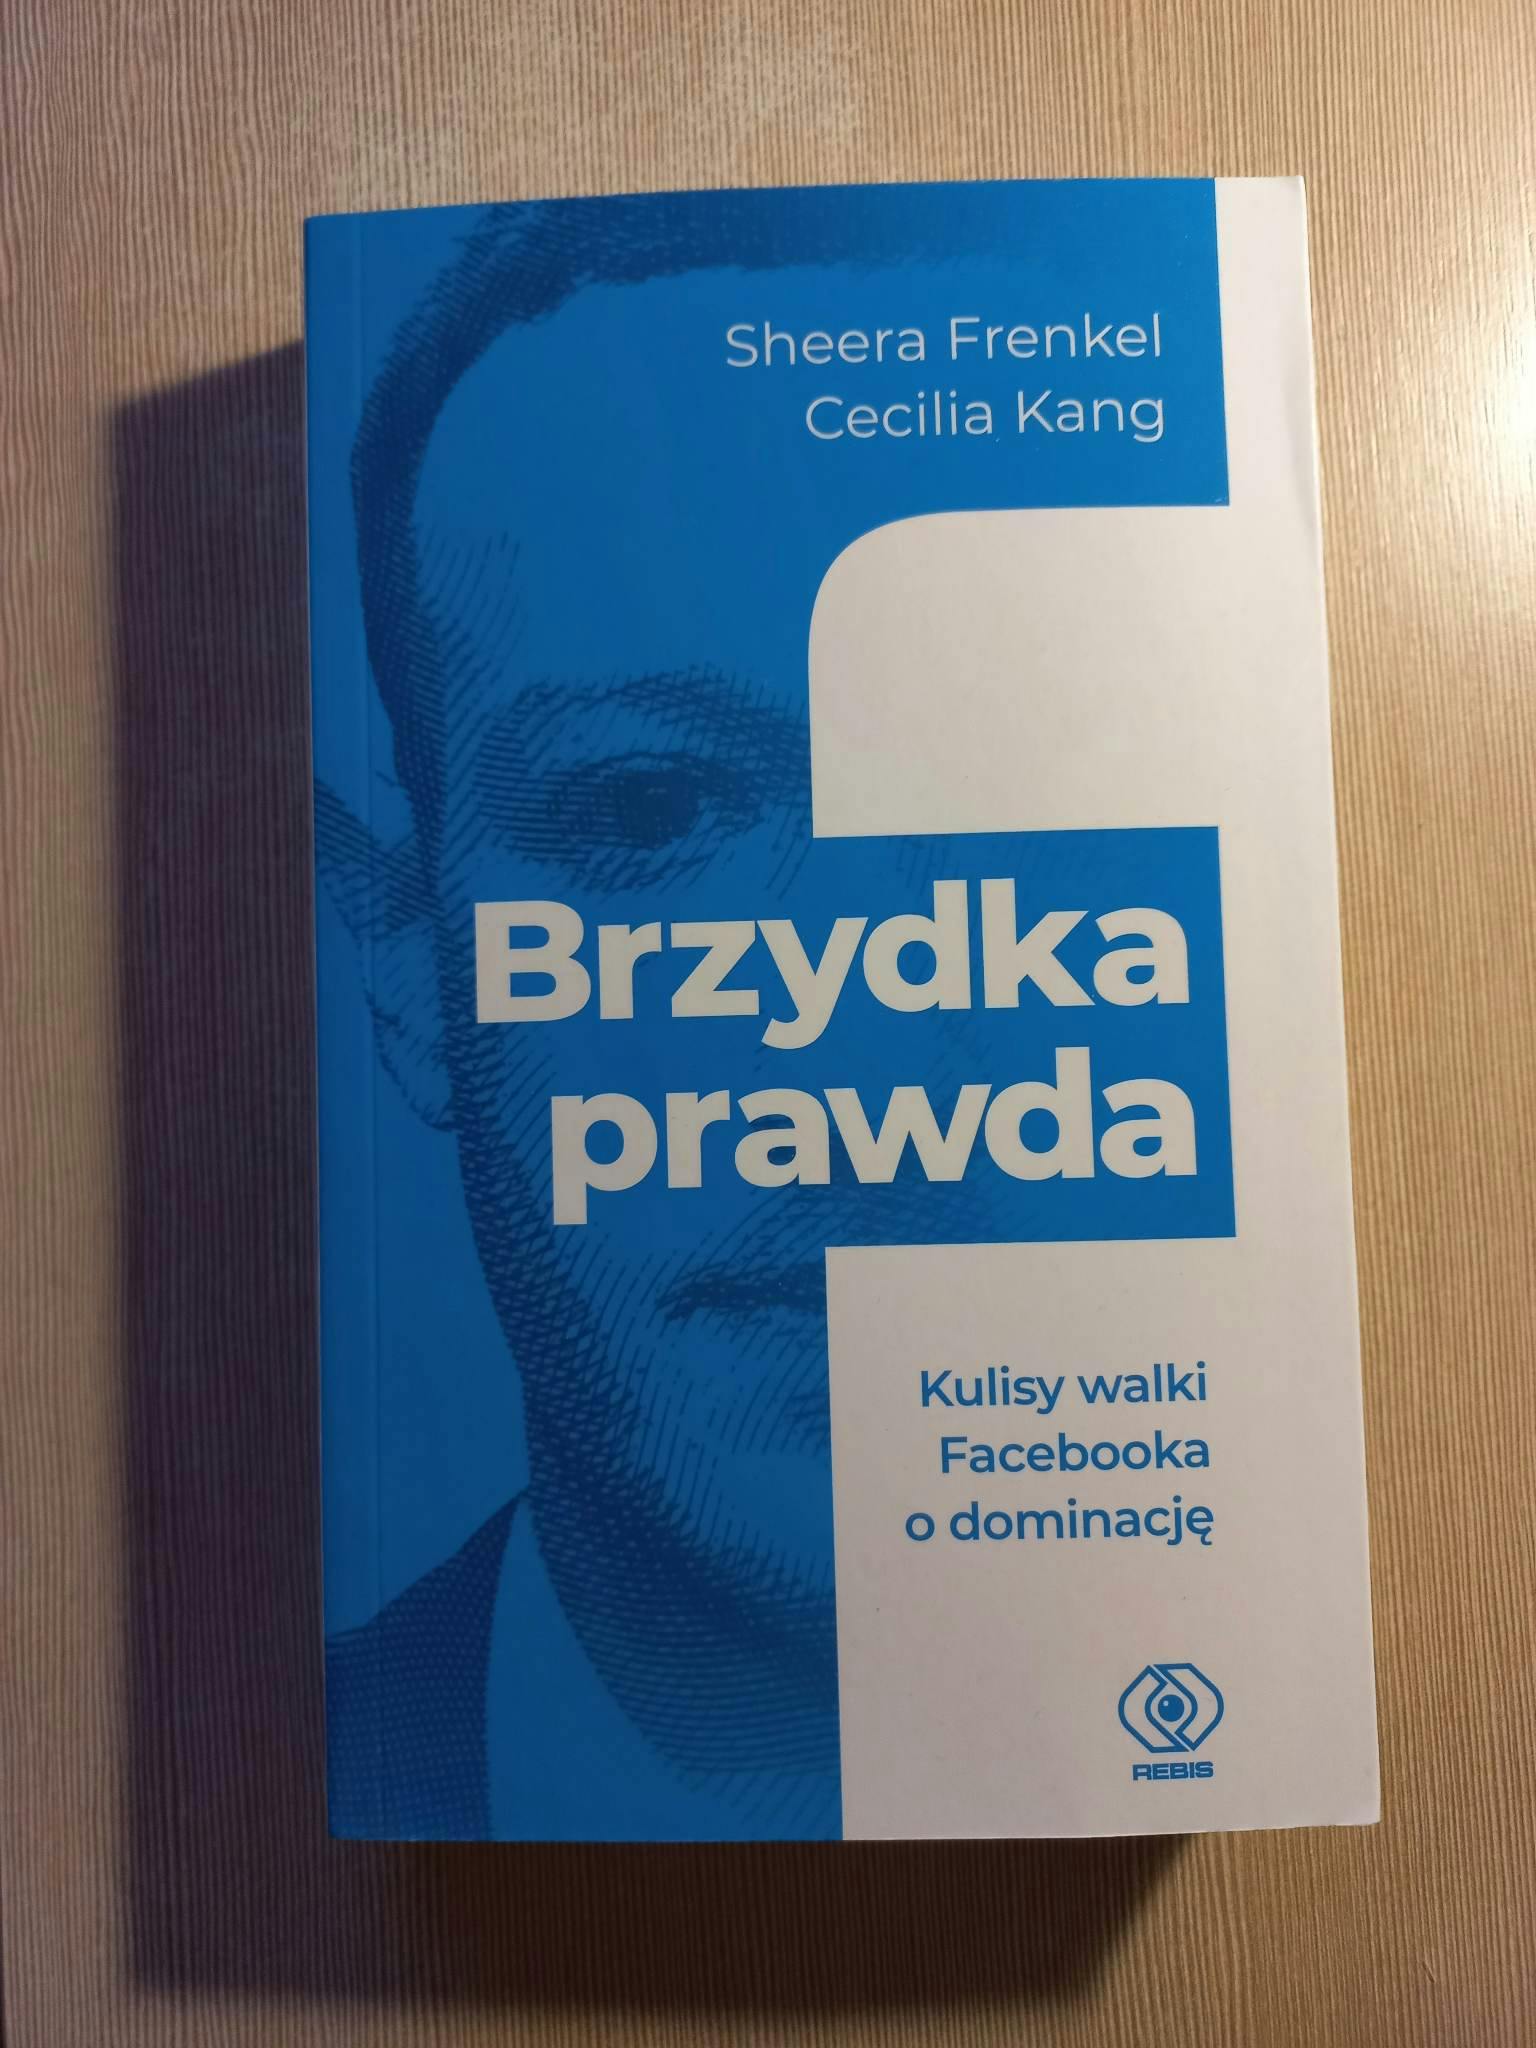 Picture of Brzydka prawda 